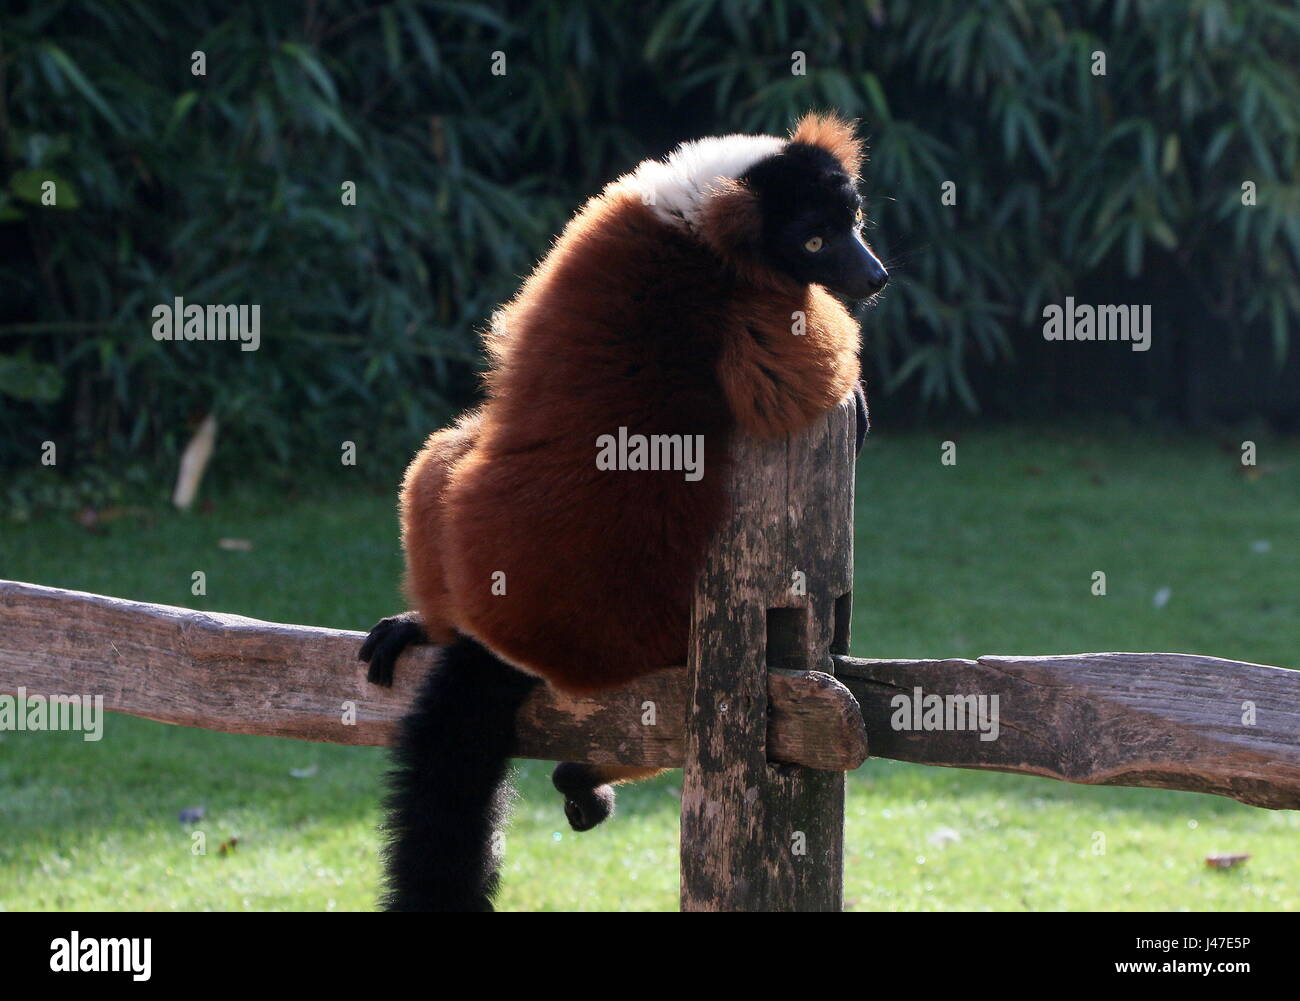 Laid back rouge malgache ou vari lémurien gélinotte (Le Varecia variegata rubra) assis sur une clôture à un zoo. Banque D'Images